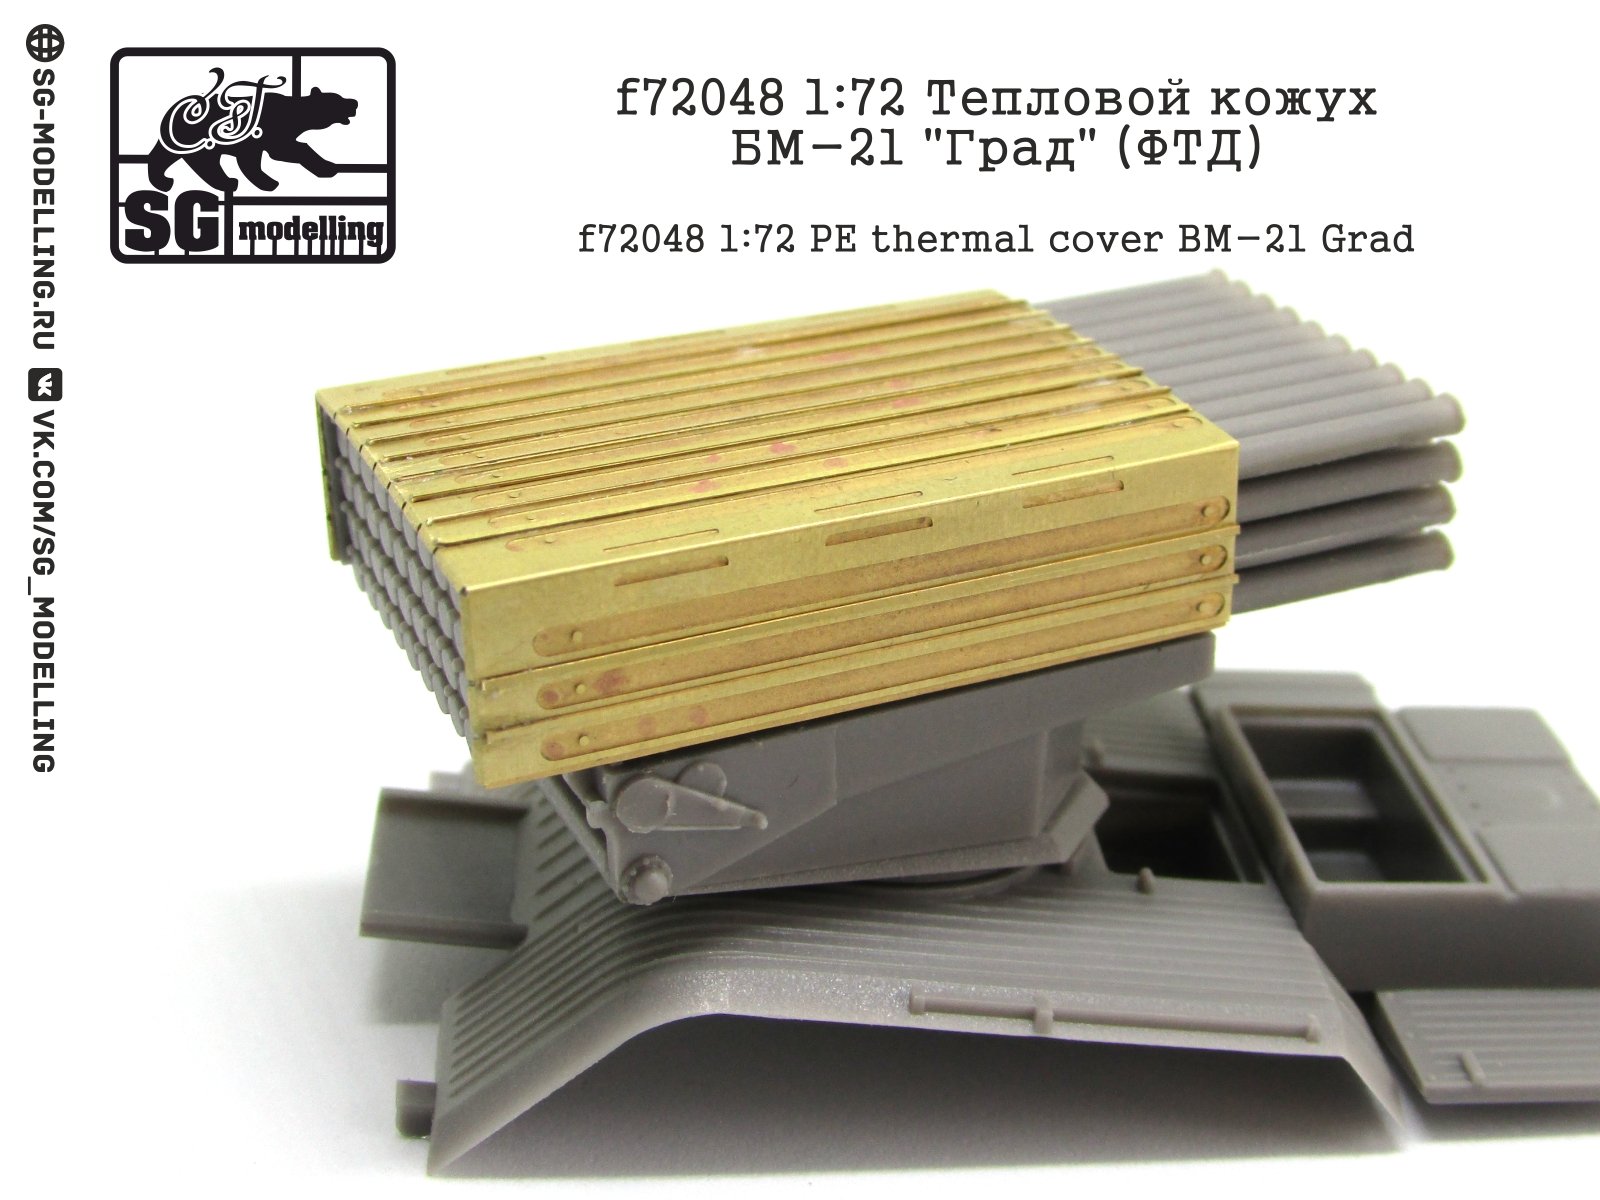 F72048 1:72 Thermal casing BM-21 "Grad" (FTD) - imodeller.store